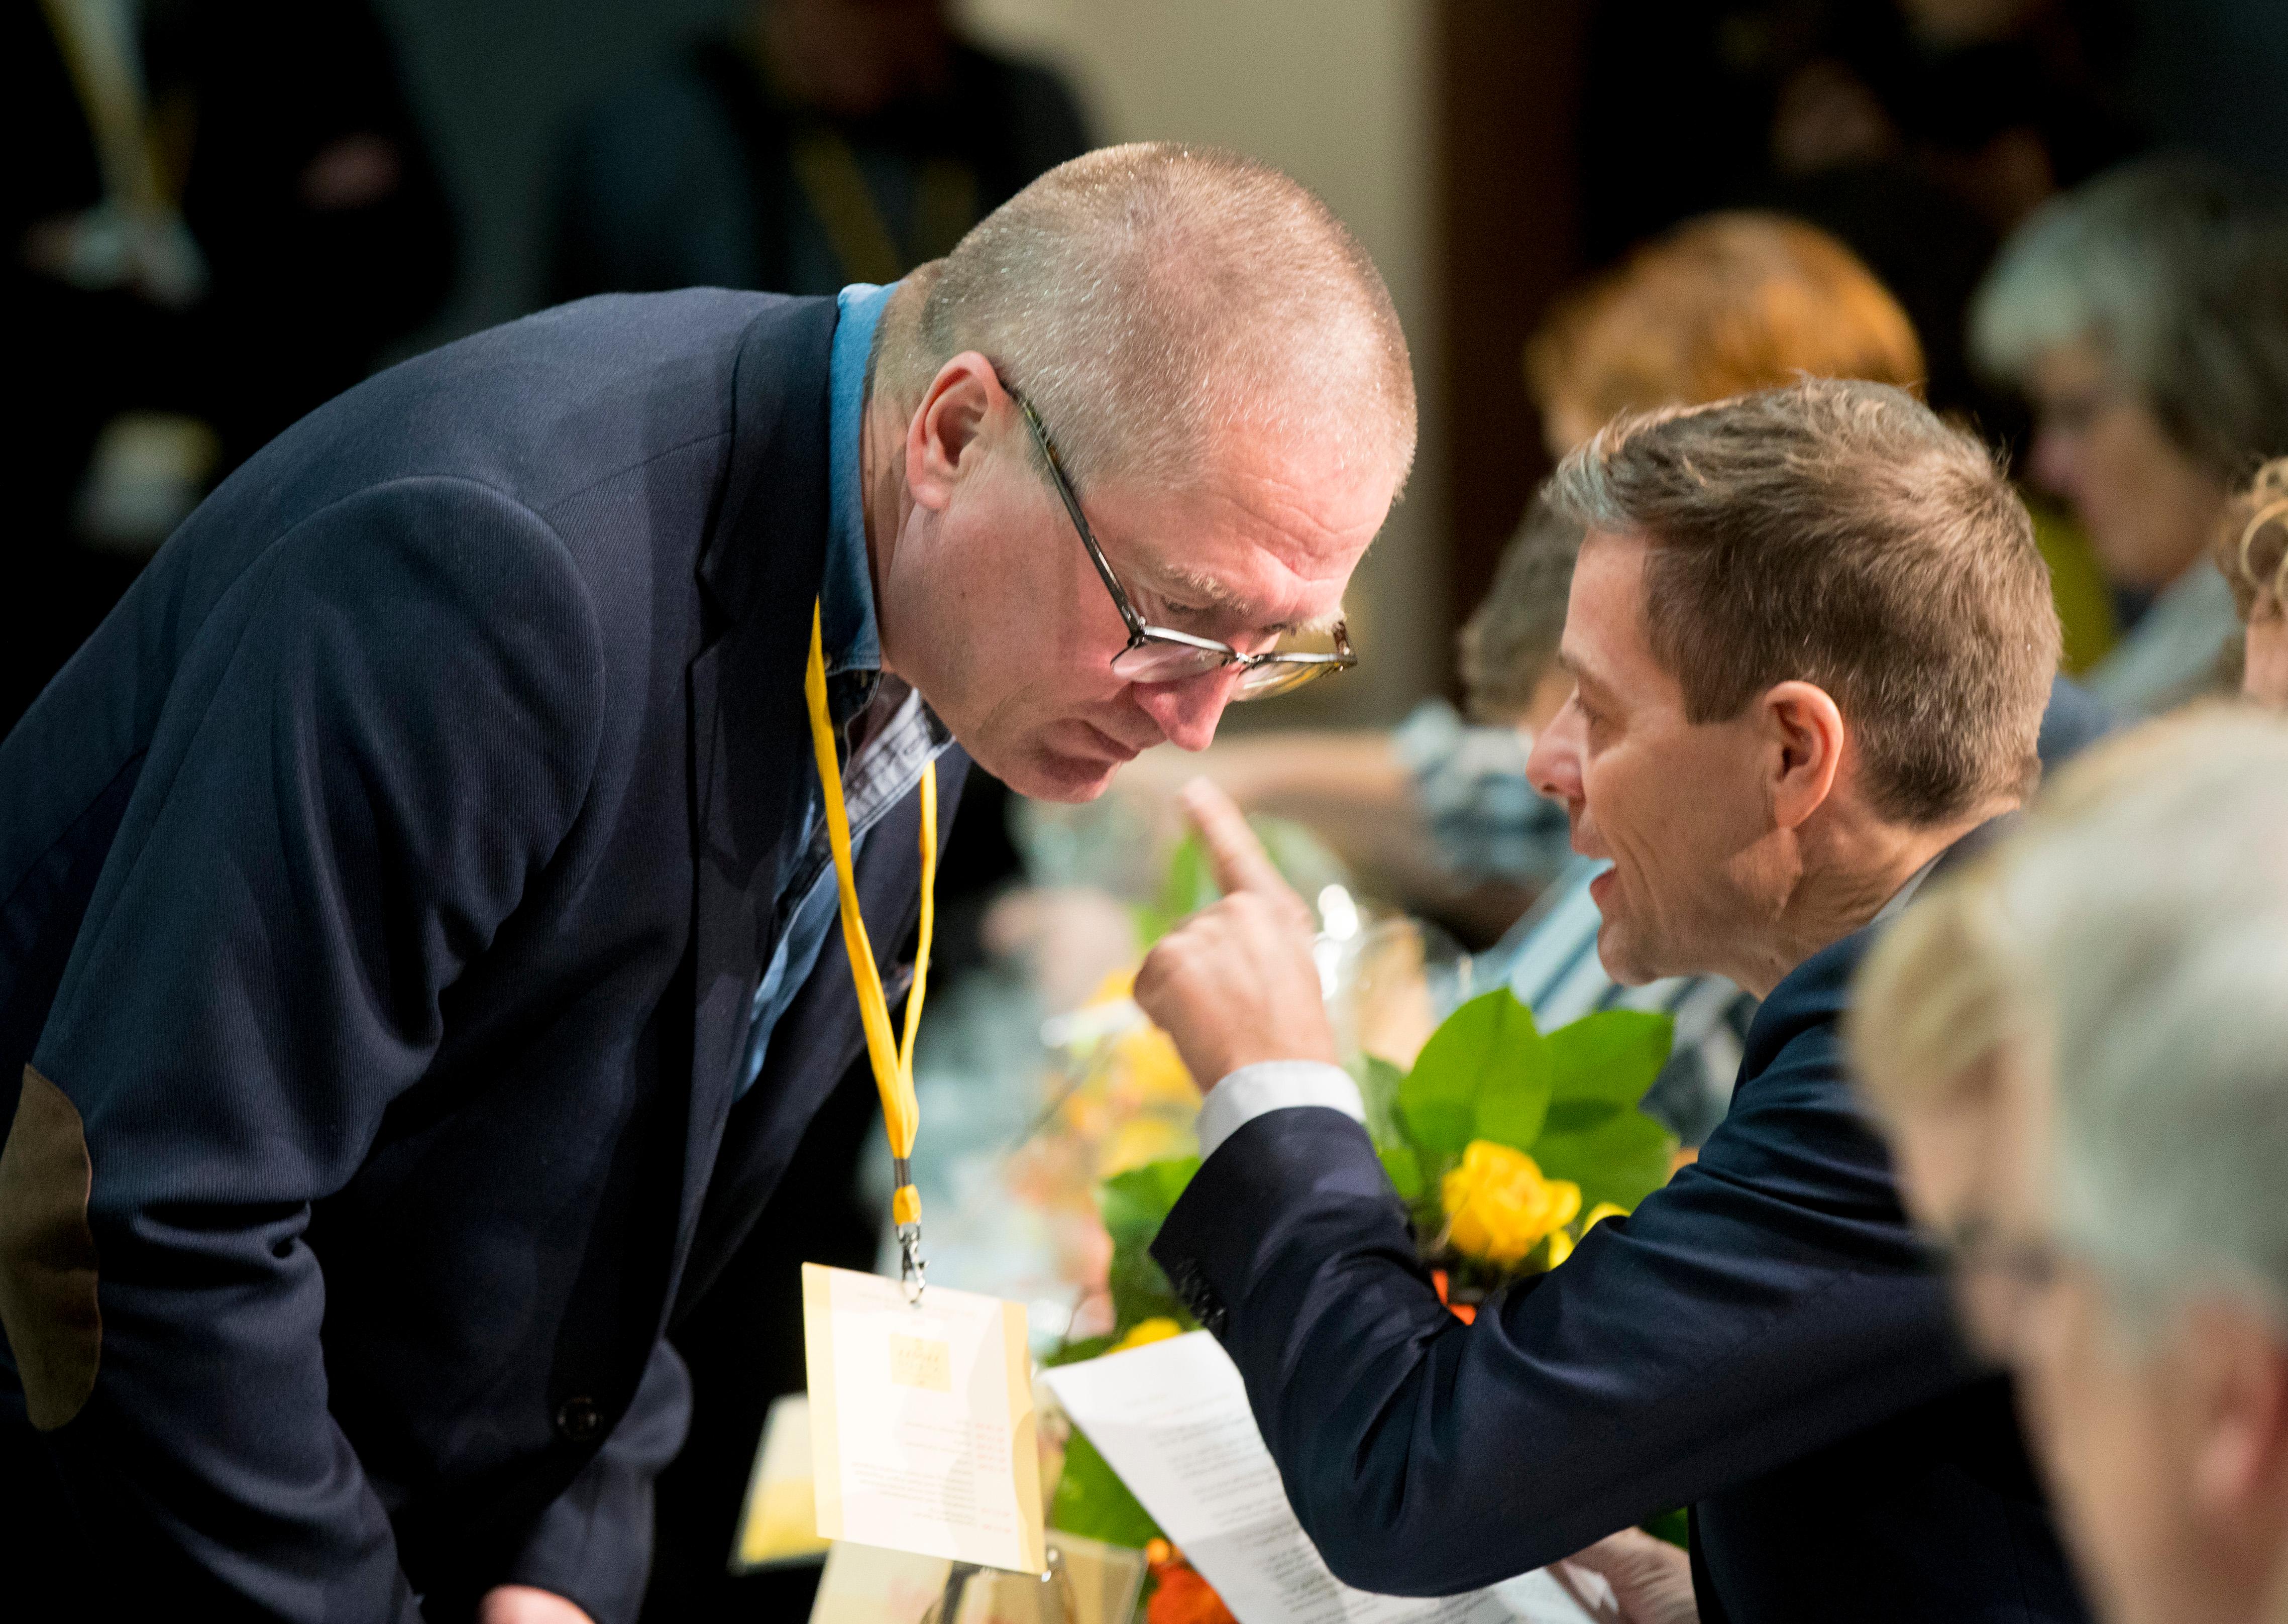 Hareide avviser at Bekkevolds vielse av Mona Høvset svekket sjansene hans i retningsvalget